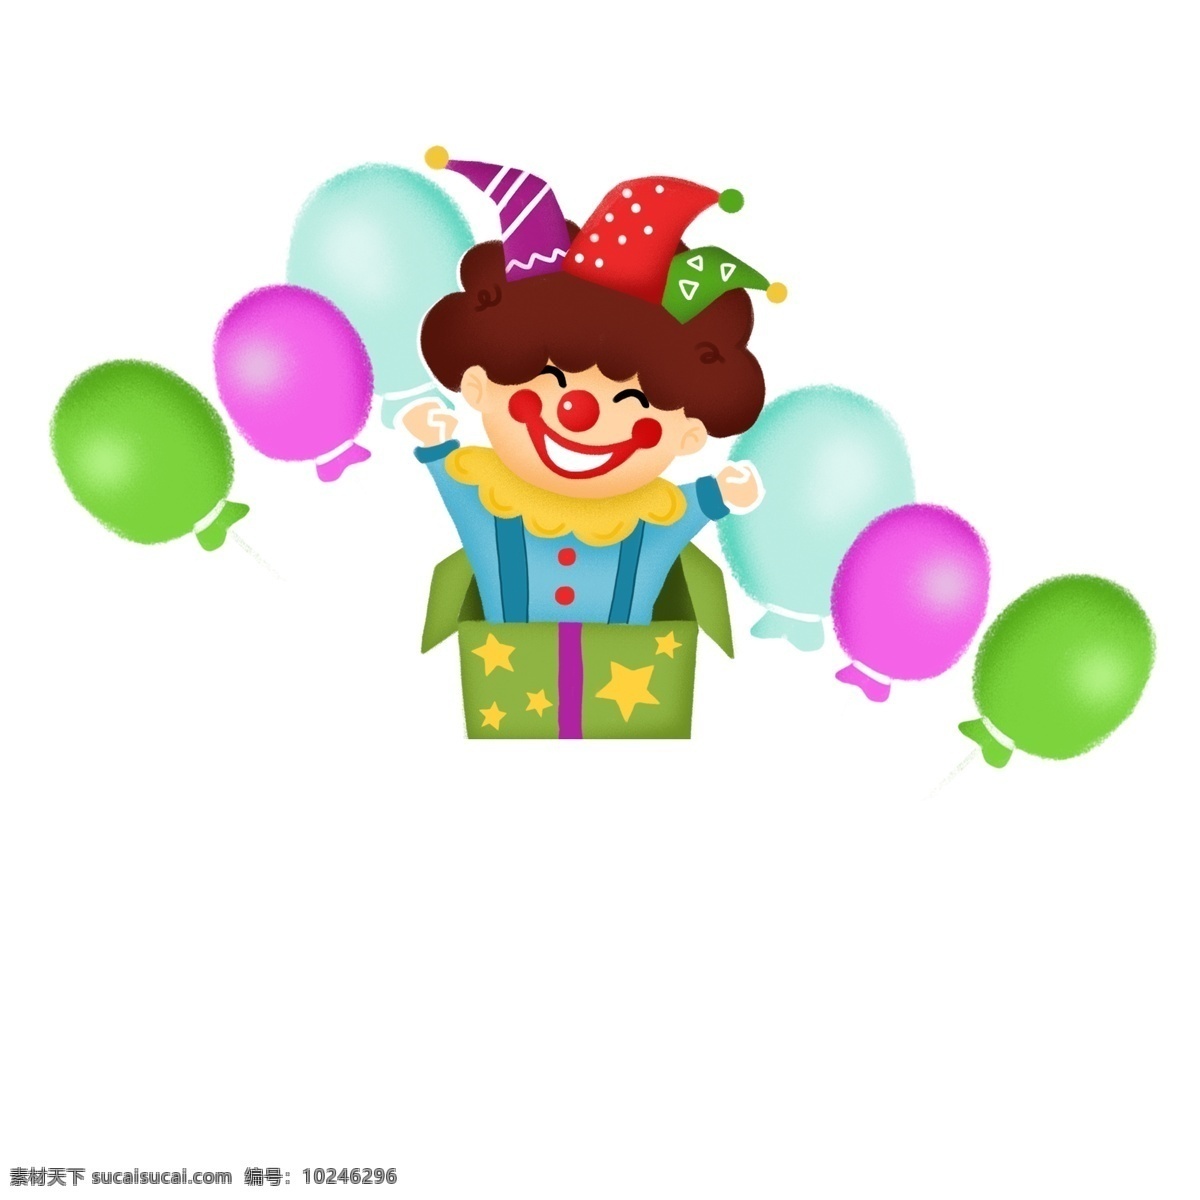 愚人节 小丑 礼盒 气球 卡通 彩色 插画 四月一日 惊吓盒